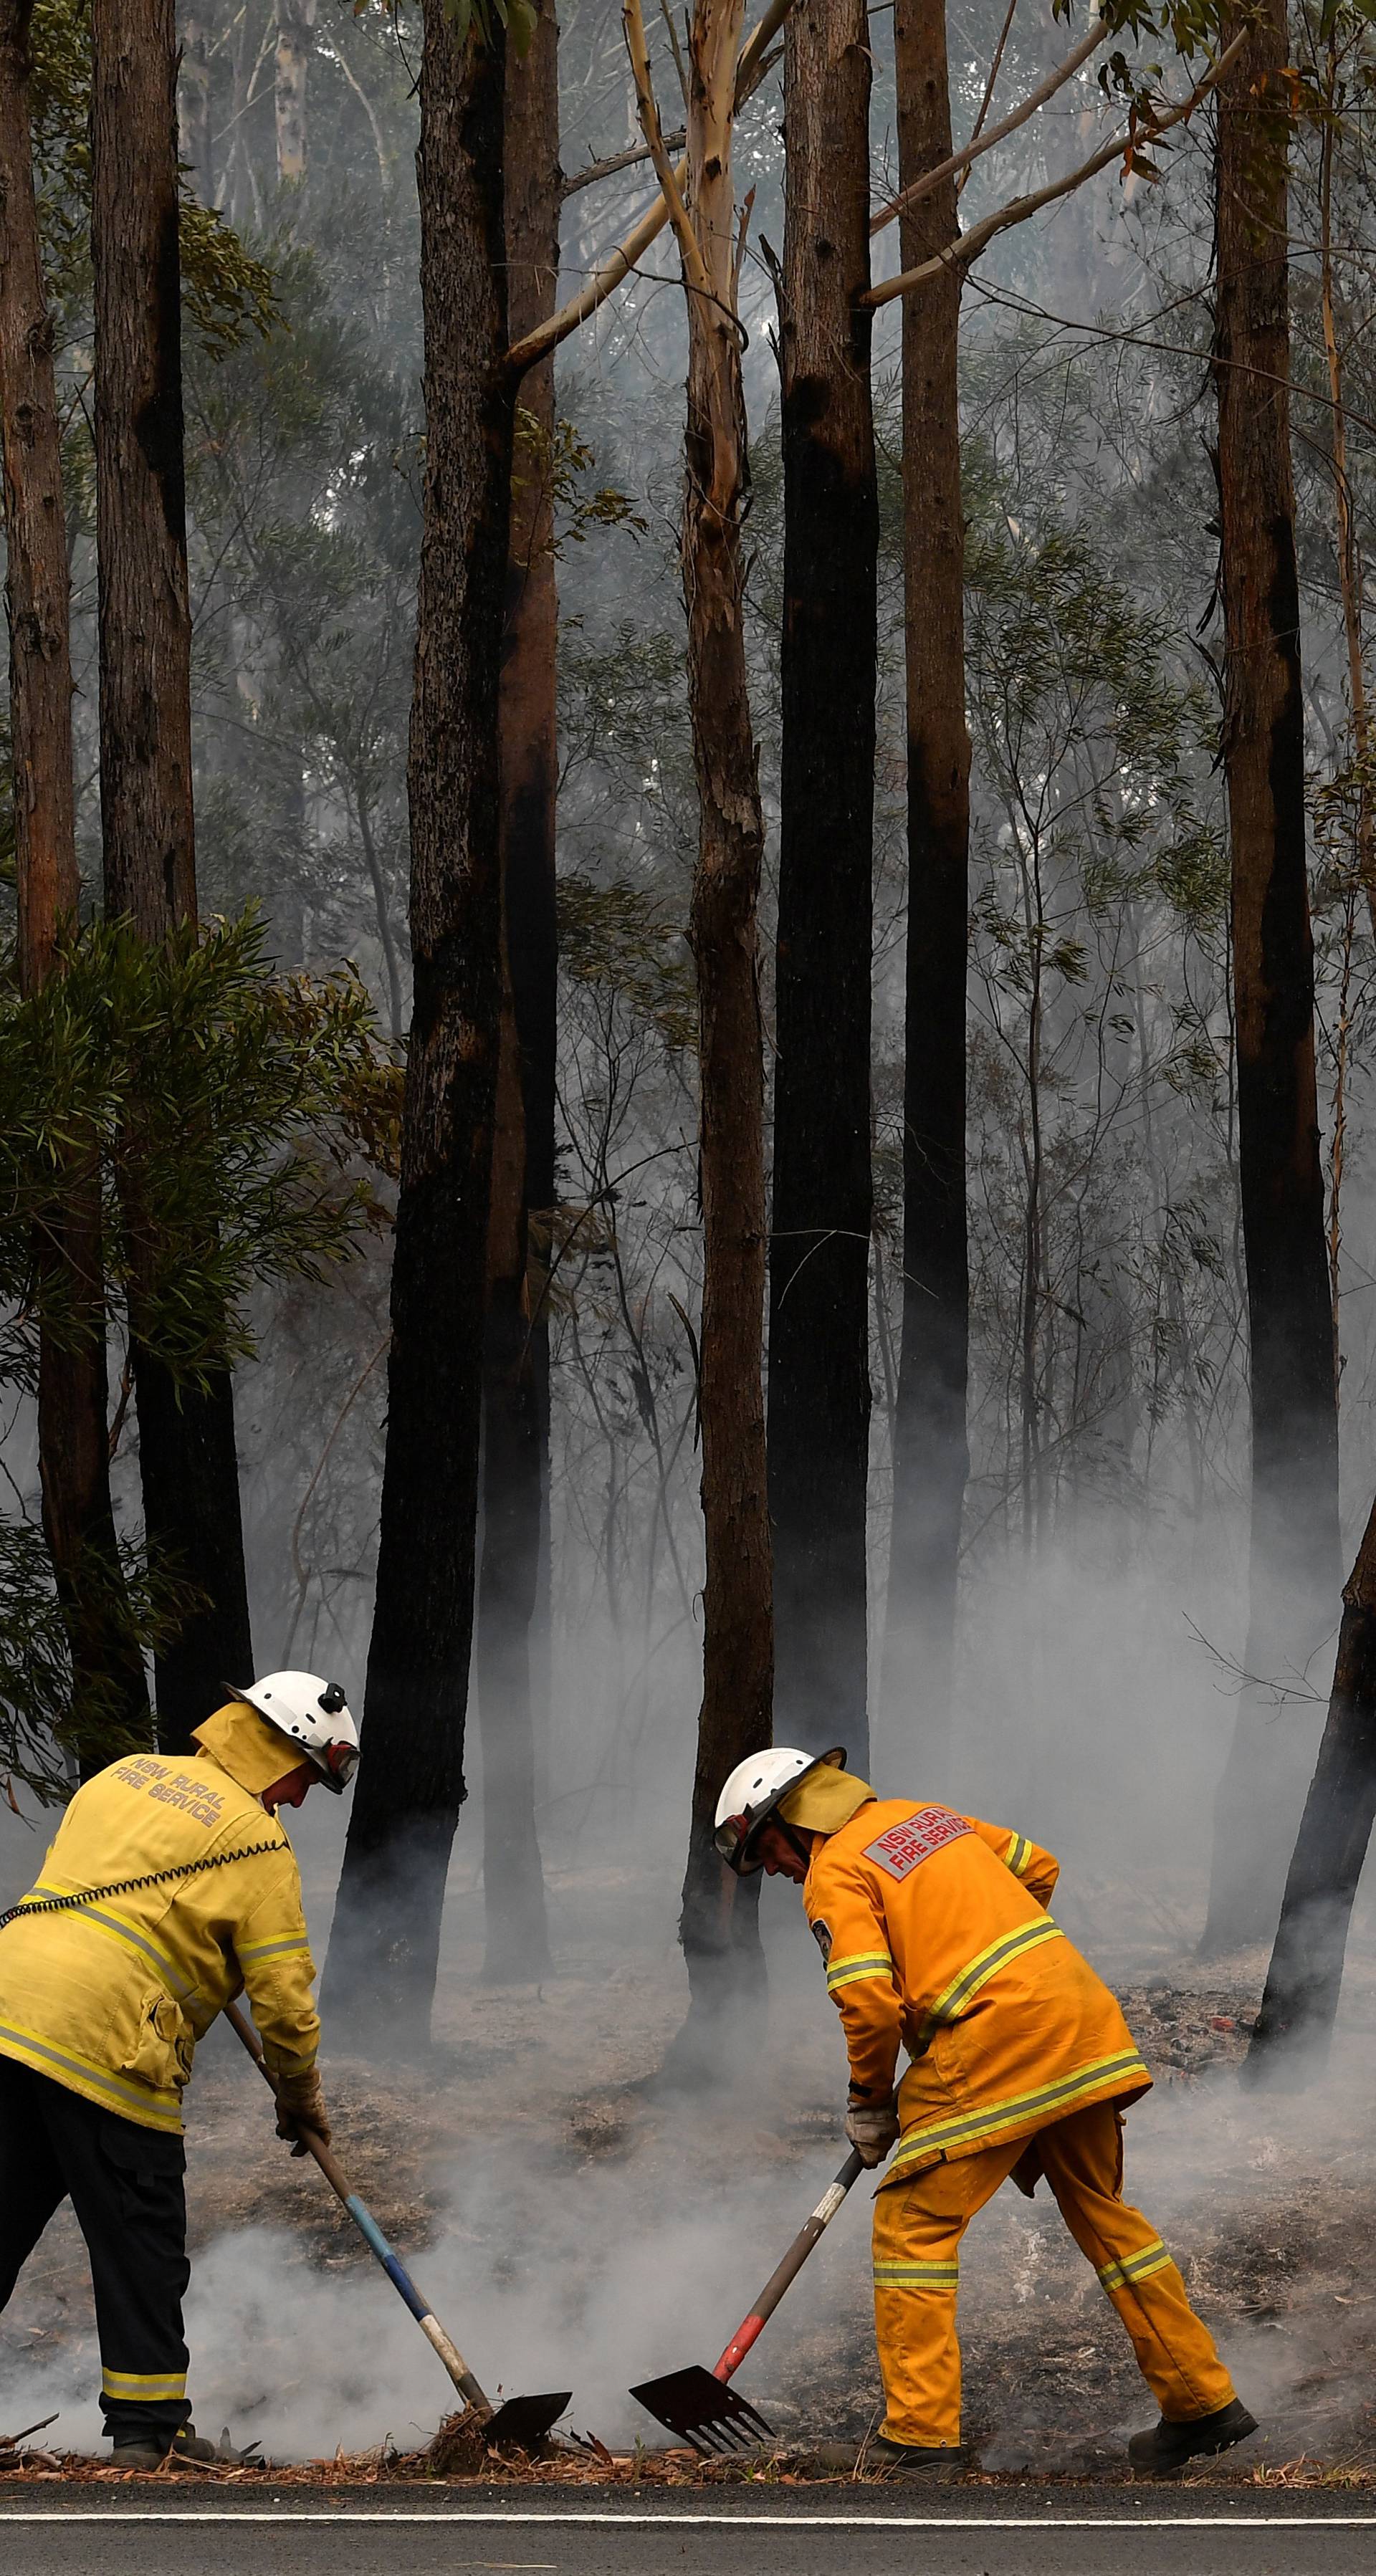 Bushfires in NSW, Australia